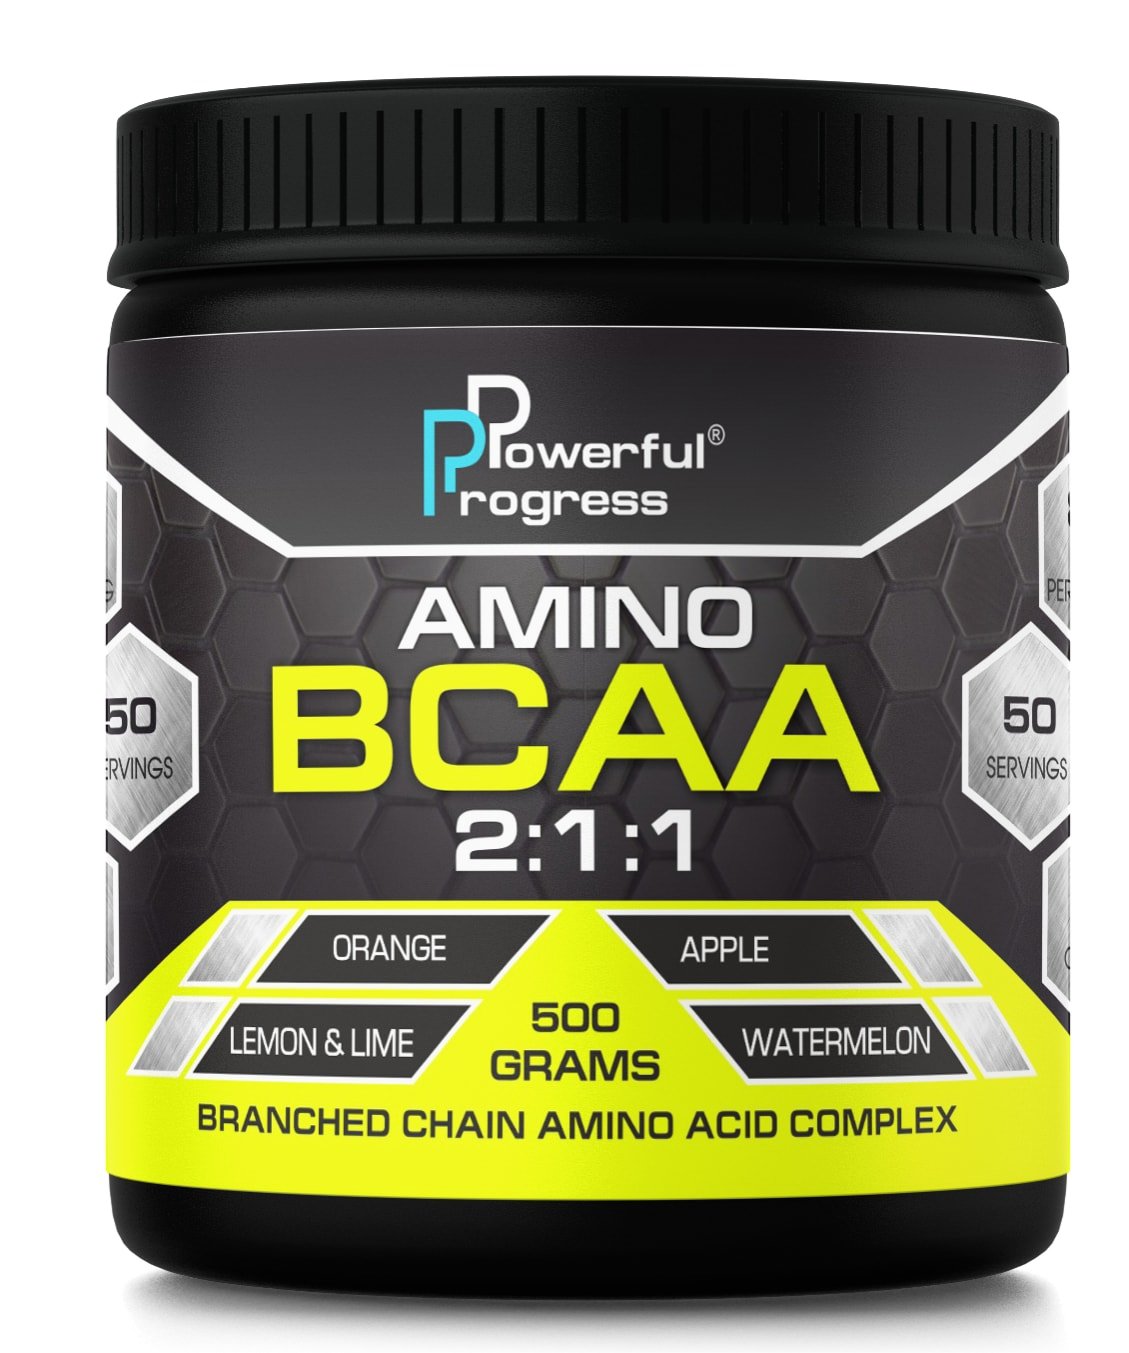 Amino BCAA, 500 g, Powerful Progress. BCAA. Weight Loss स्वास्थ्य लाभ Anti-catabolic properties Lean muscle mass 